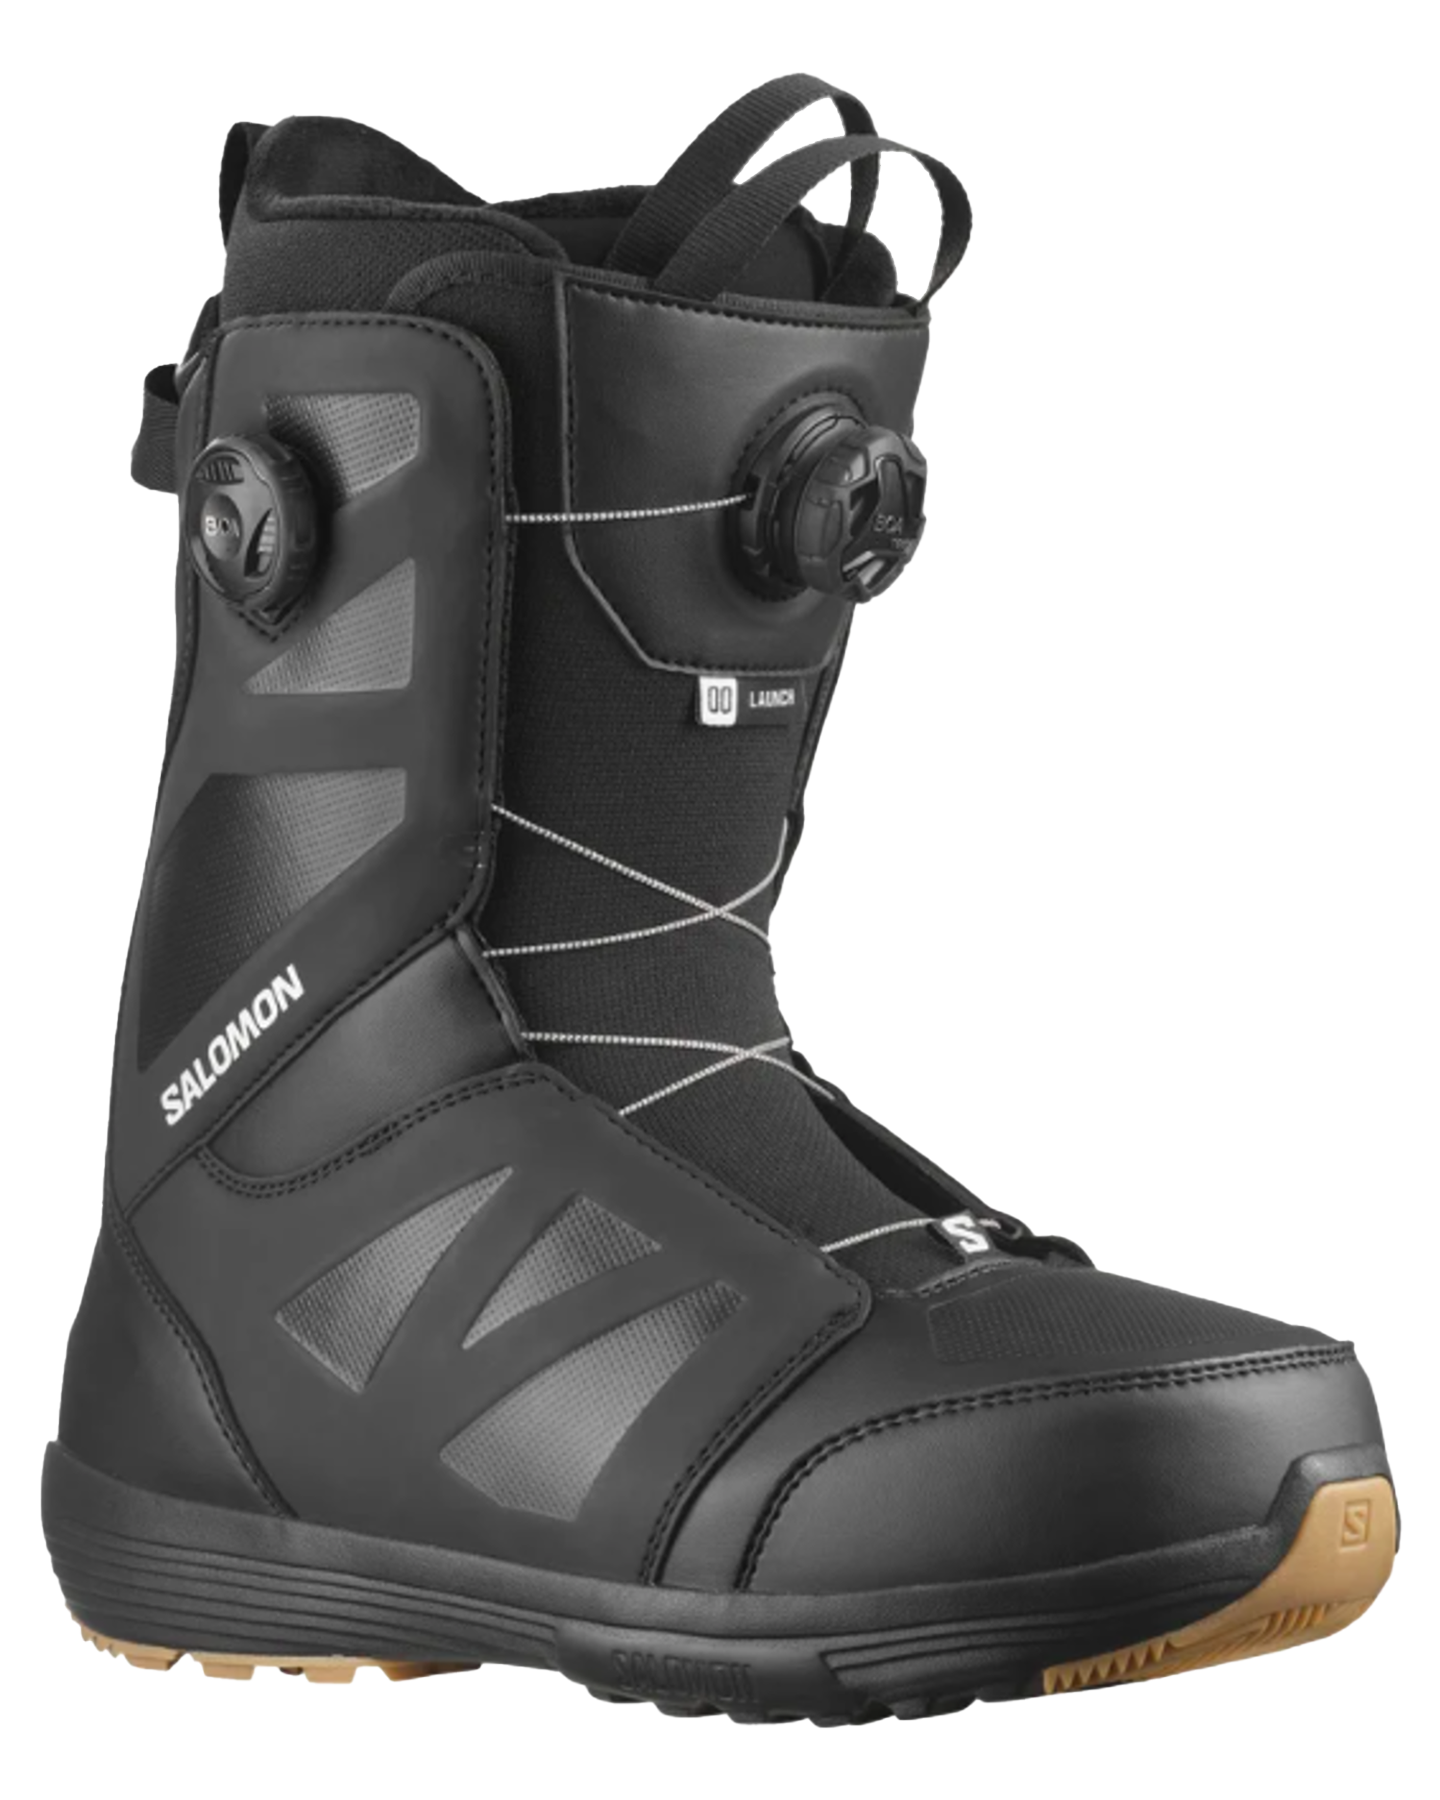 Salomon Launch Boa Sj Boa Snowboard Boots - Black/Black/White - 2024 Men's Snowboard Boots - SnowSkiersWarehouse